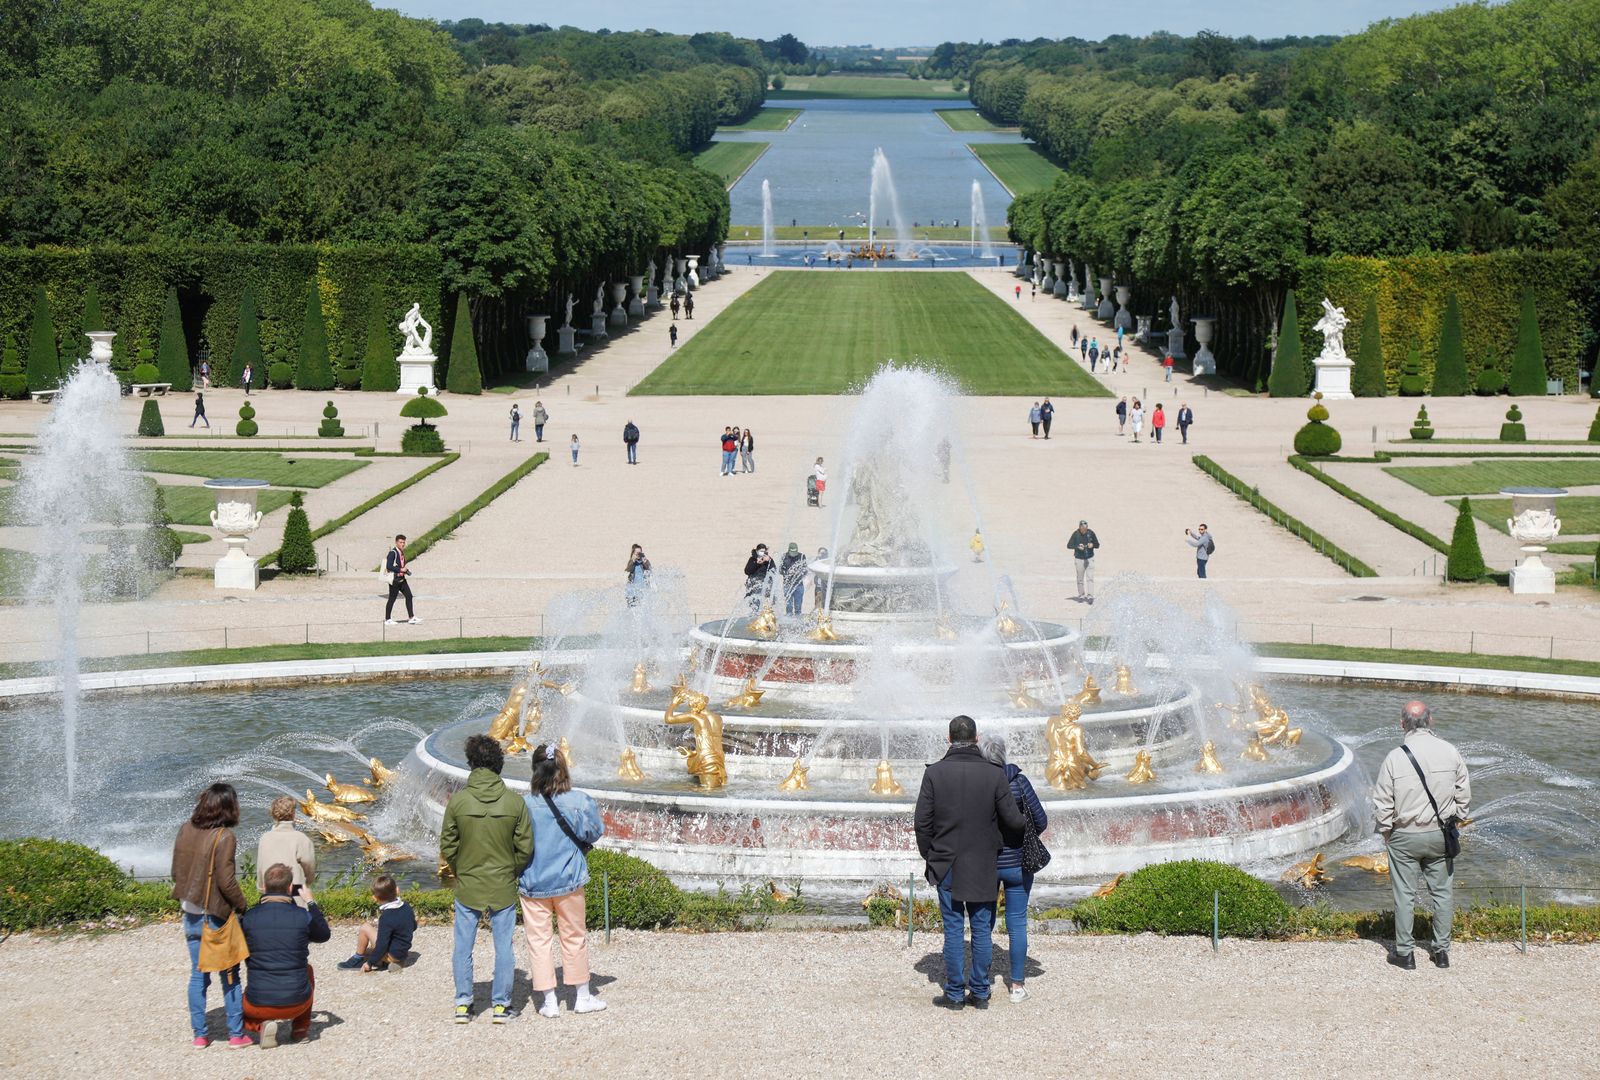 زوار ينظرون إلى نافورة لاتونا في حدائق قصر فرساي بالقرب من باريس في فرنسا 6 يونيو 2020  - REUTERS